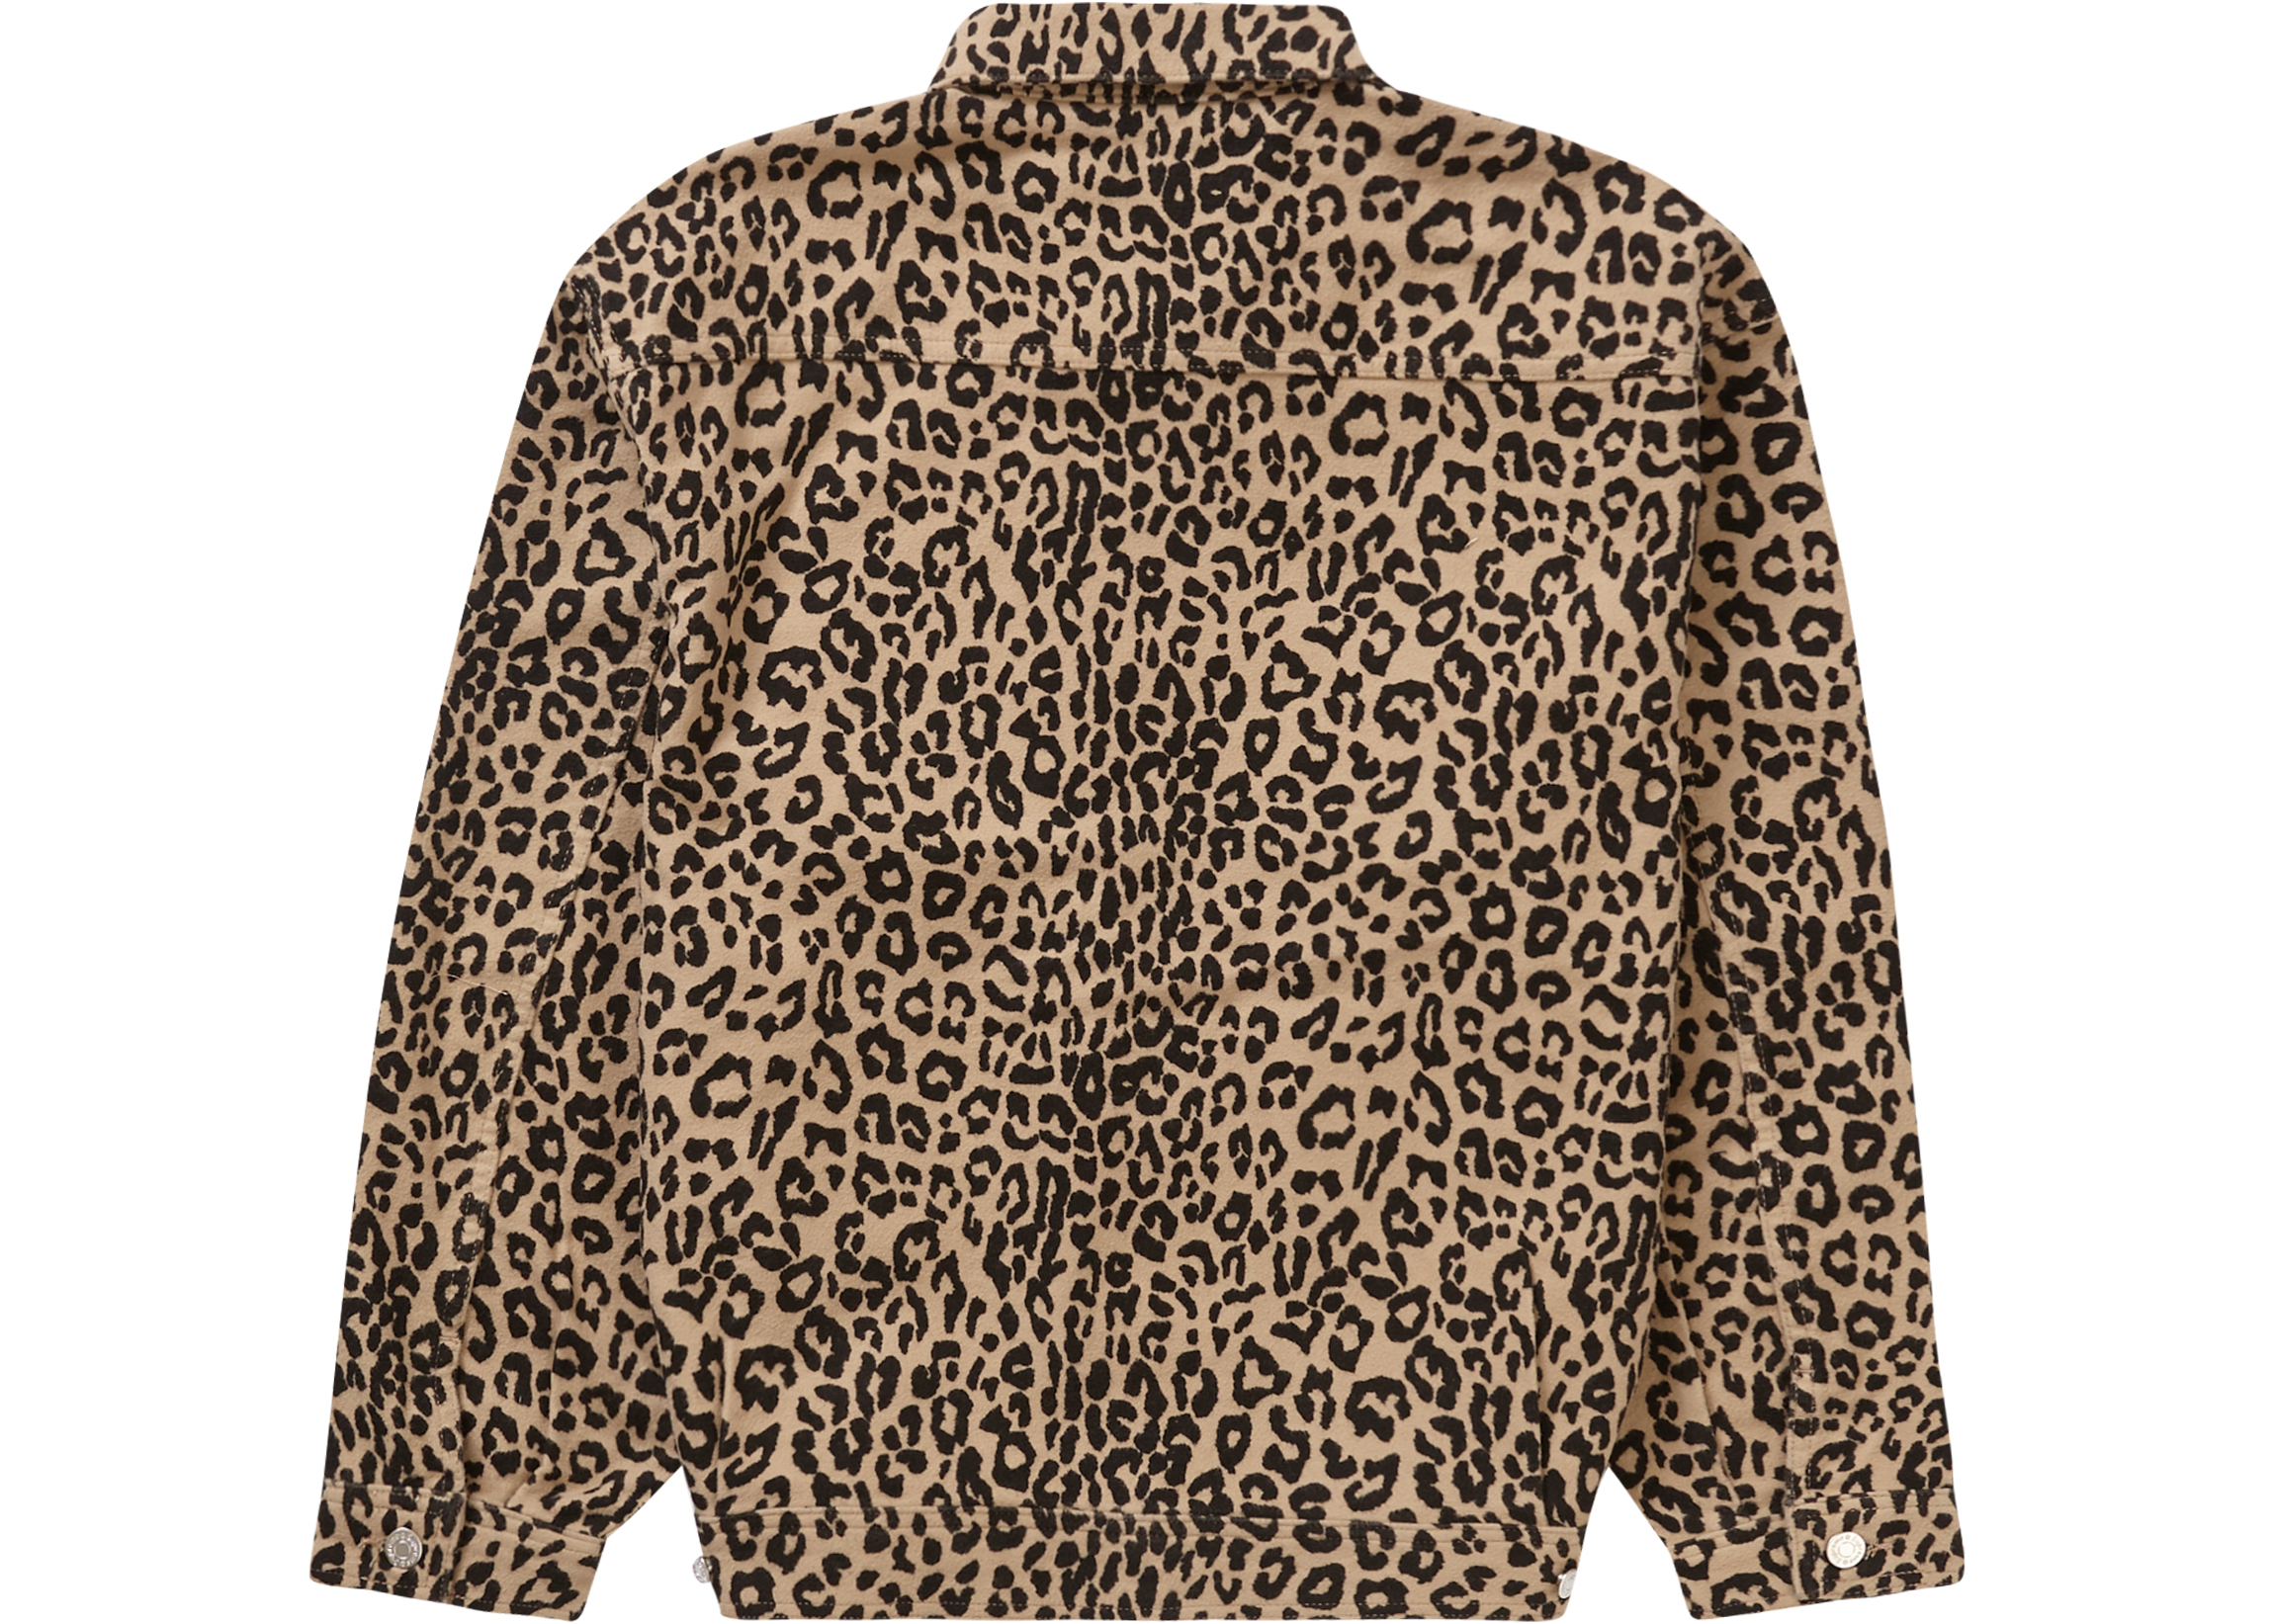 ステッカー2枚お付けしますSupreme Moleskin Work jacket leopard